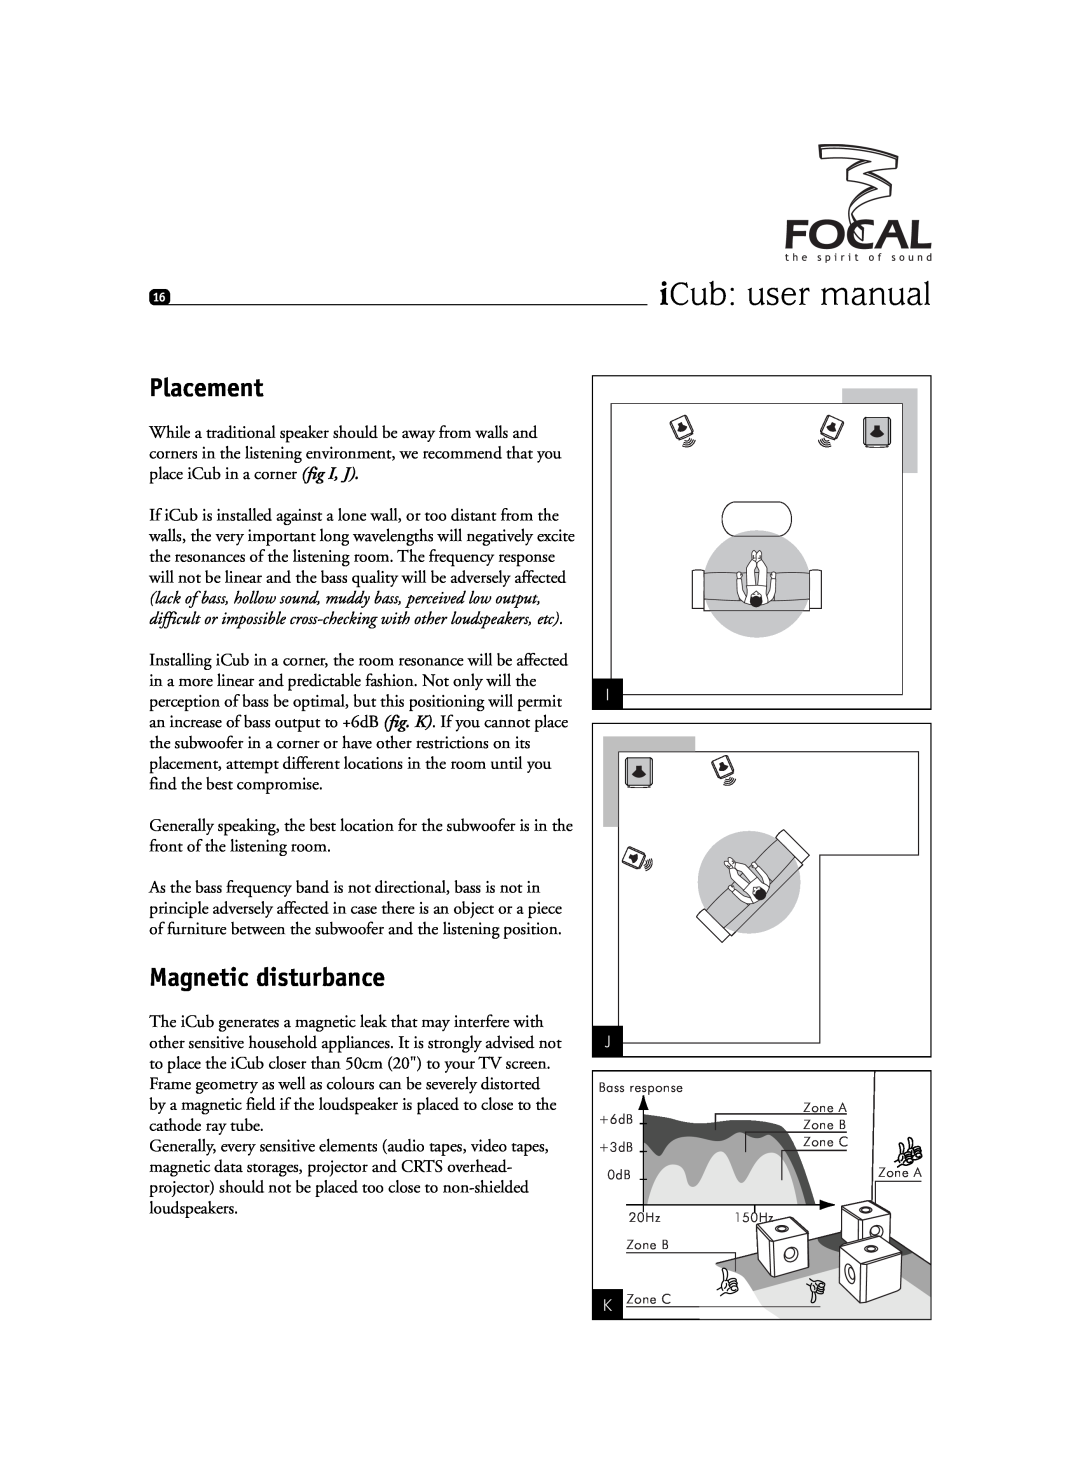 Focal SIB XXL, Sib XL user manual Placement, Magnetic disturbance 